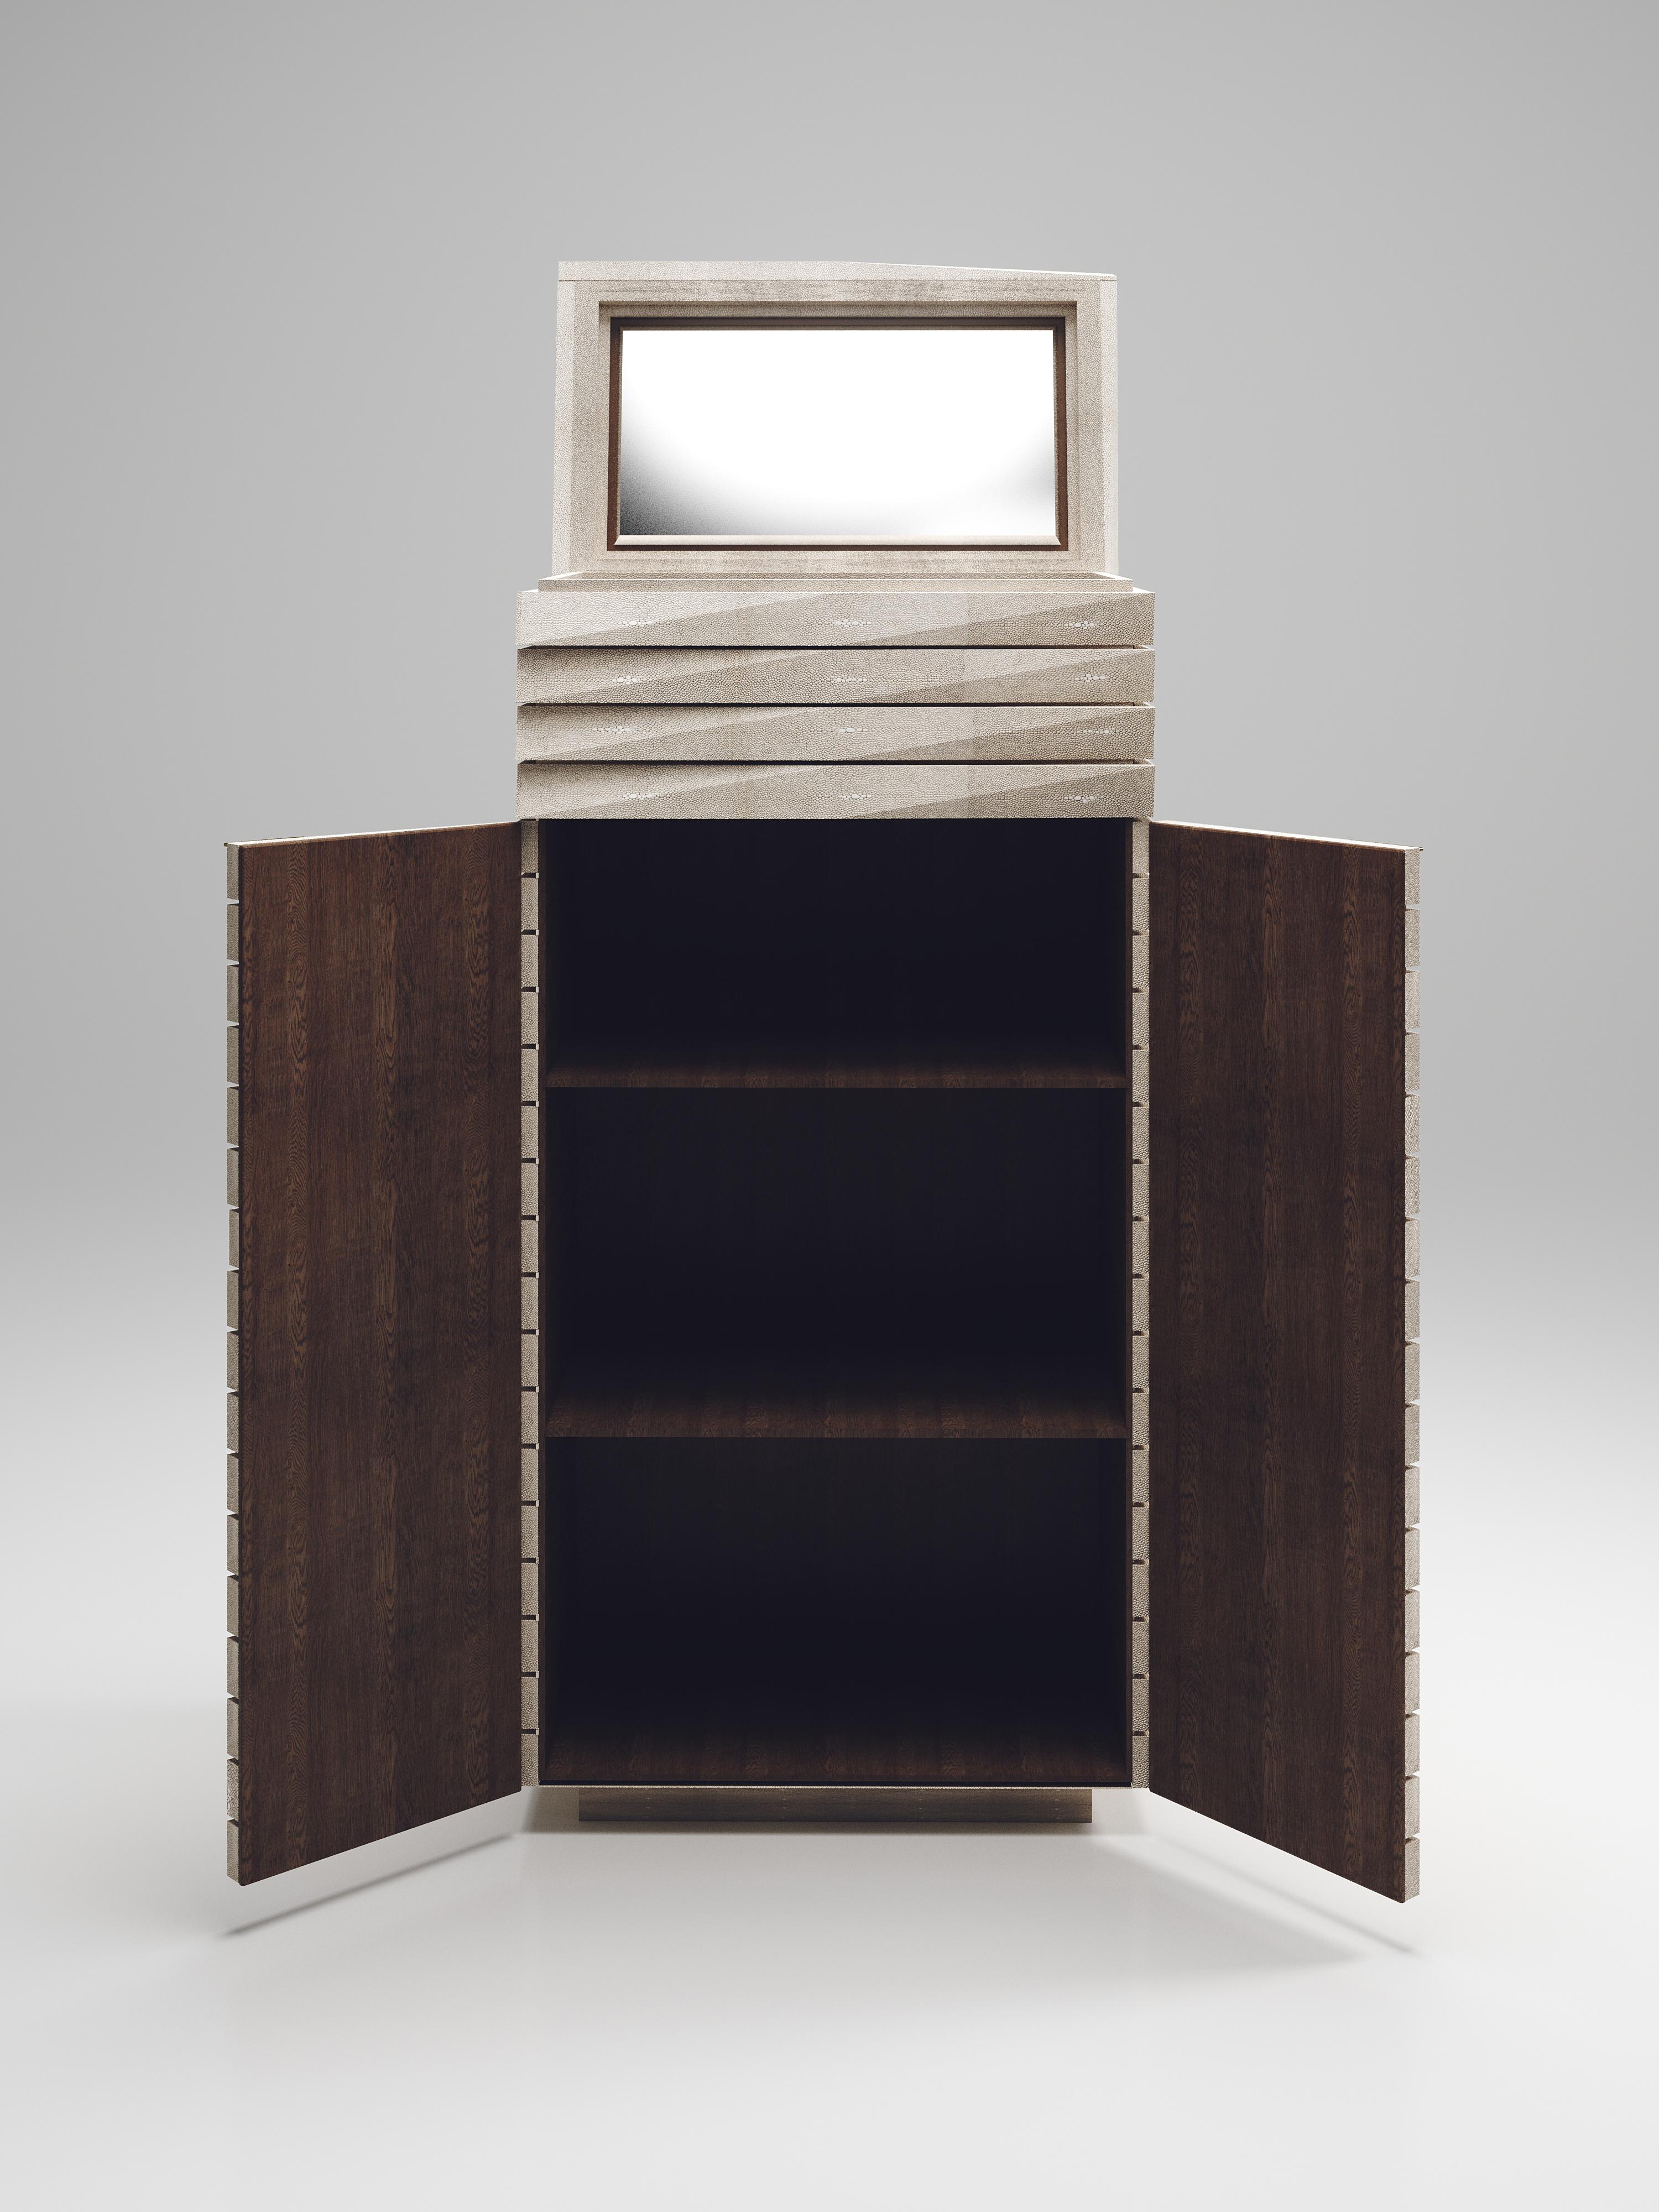 Le meuble de bar cannelé de R & Y Augousti présente un design épuré et géométrique. La pièce incrustée de galuchat crème est d'une grande utilité tout en conservant une esthétique saisissante grâce aux incroyables détails cannelés ciselés à la main.